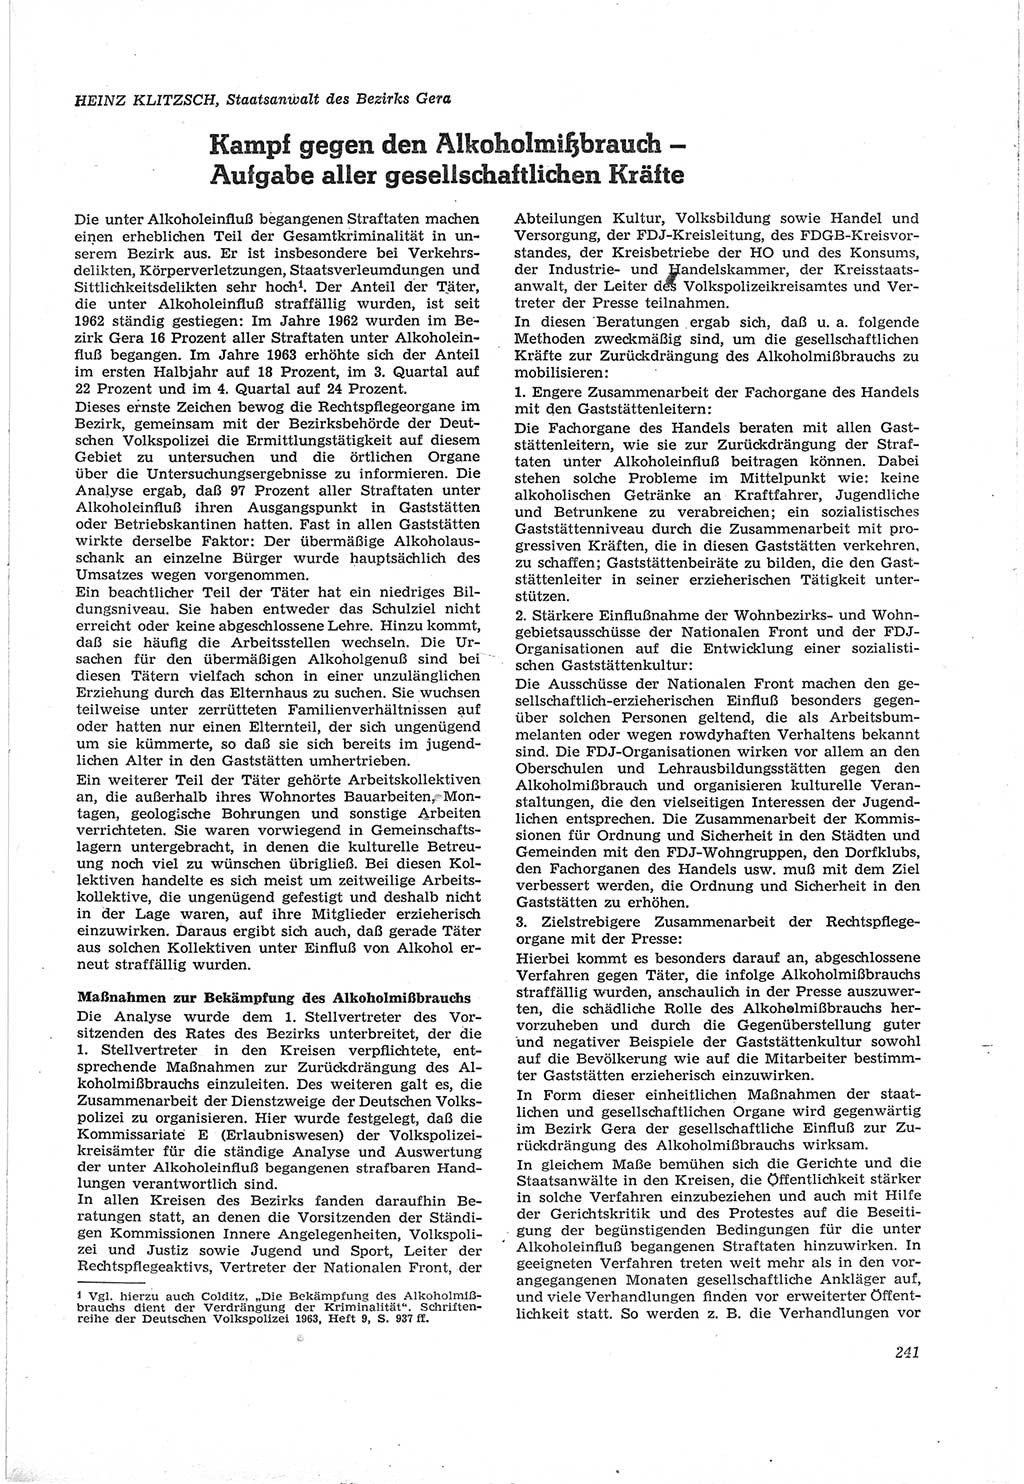 Neue Justiz (NJ), Zeitschrift für Recht und Rechtswissenschaft [Deutsche Demokratische Republik (DDR)], 18. Jahrgang 1964, Seite 241 (NJ DDR 1964, S. 241)